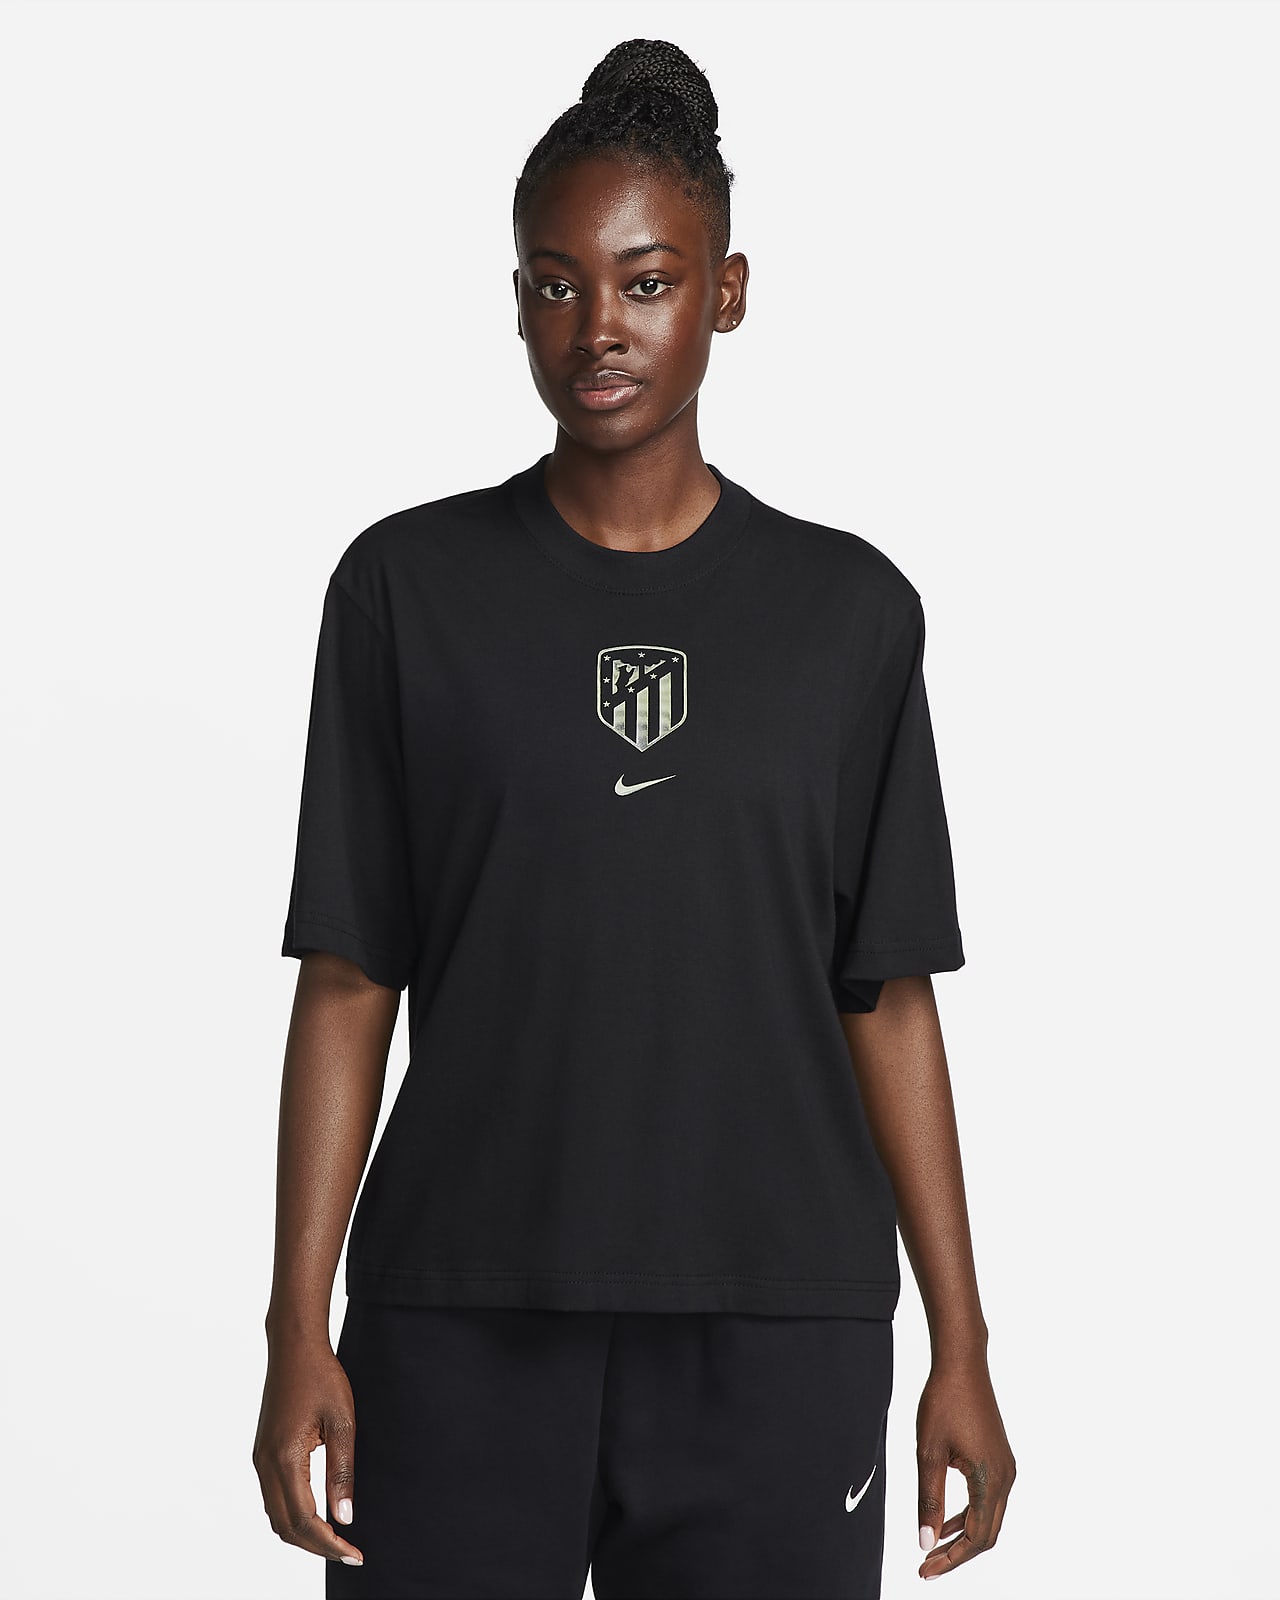 T-shirt de futebol Nike com corte a direito Atlético de Madrid para mulher